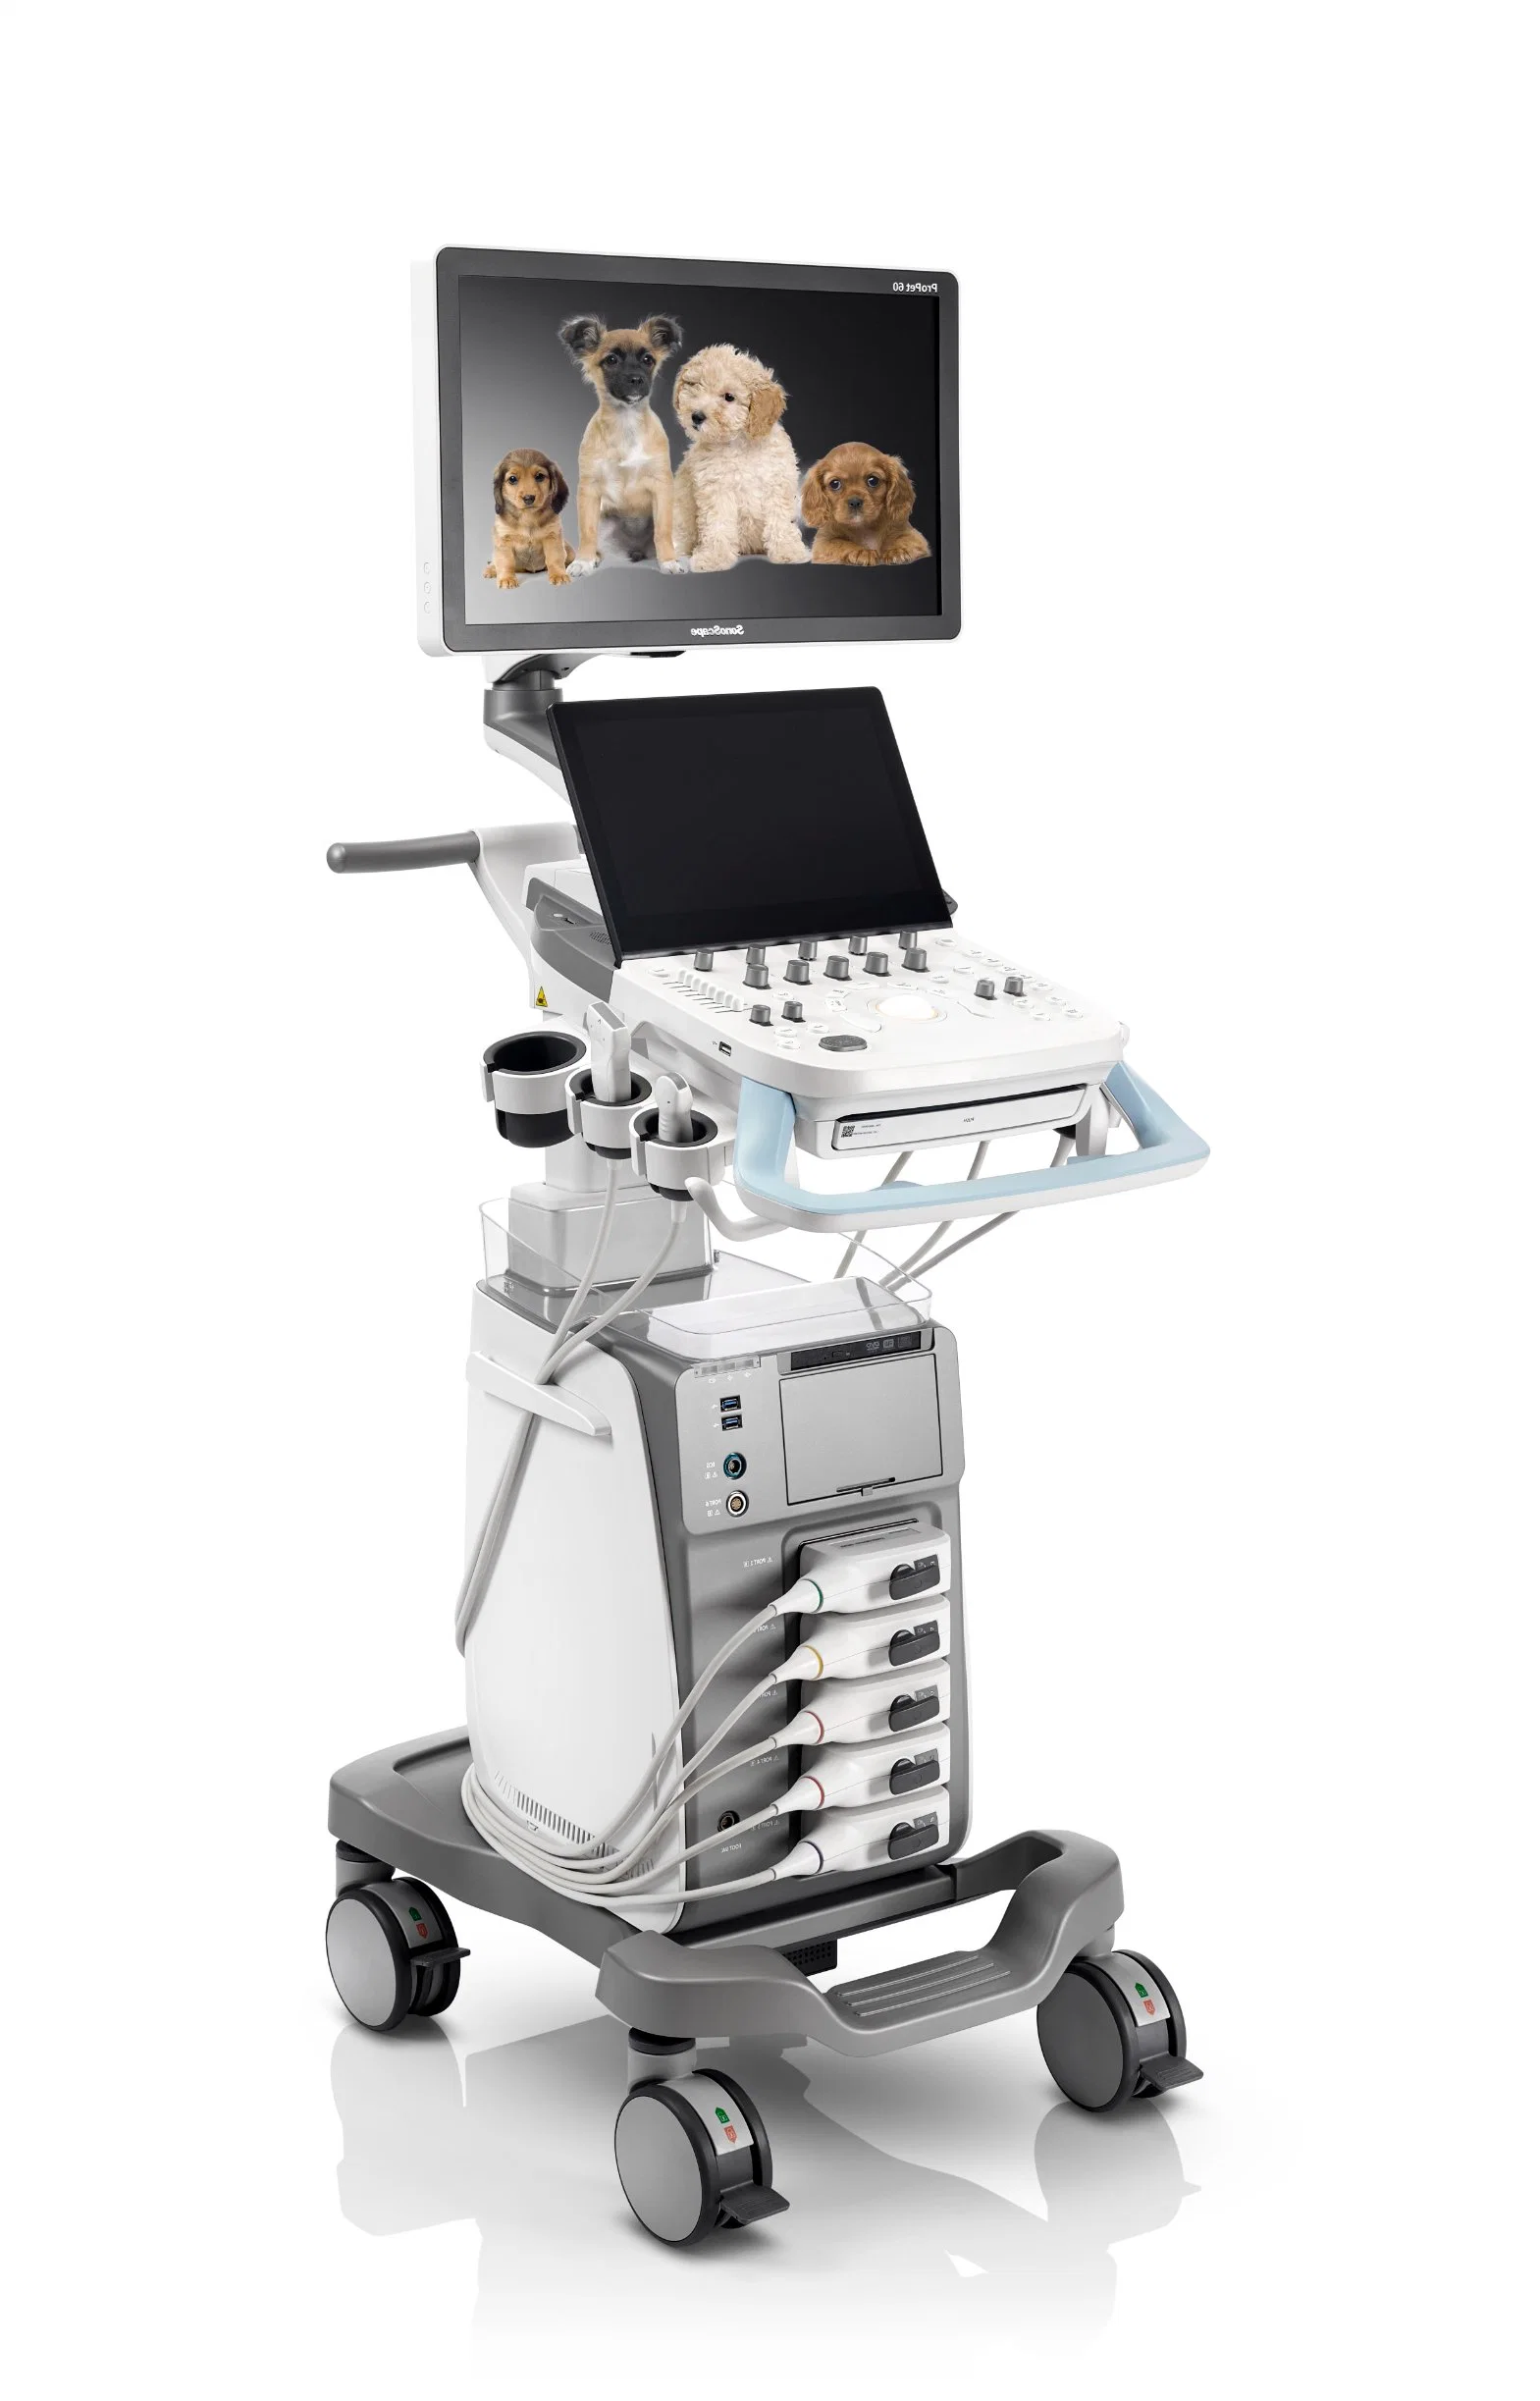 Sonoscape PROPET 60 sistema de diagnóstico ultrasónico animal con escáner de ultrasonidos veterinario Con transductores para el felino equino canino PROPET 70